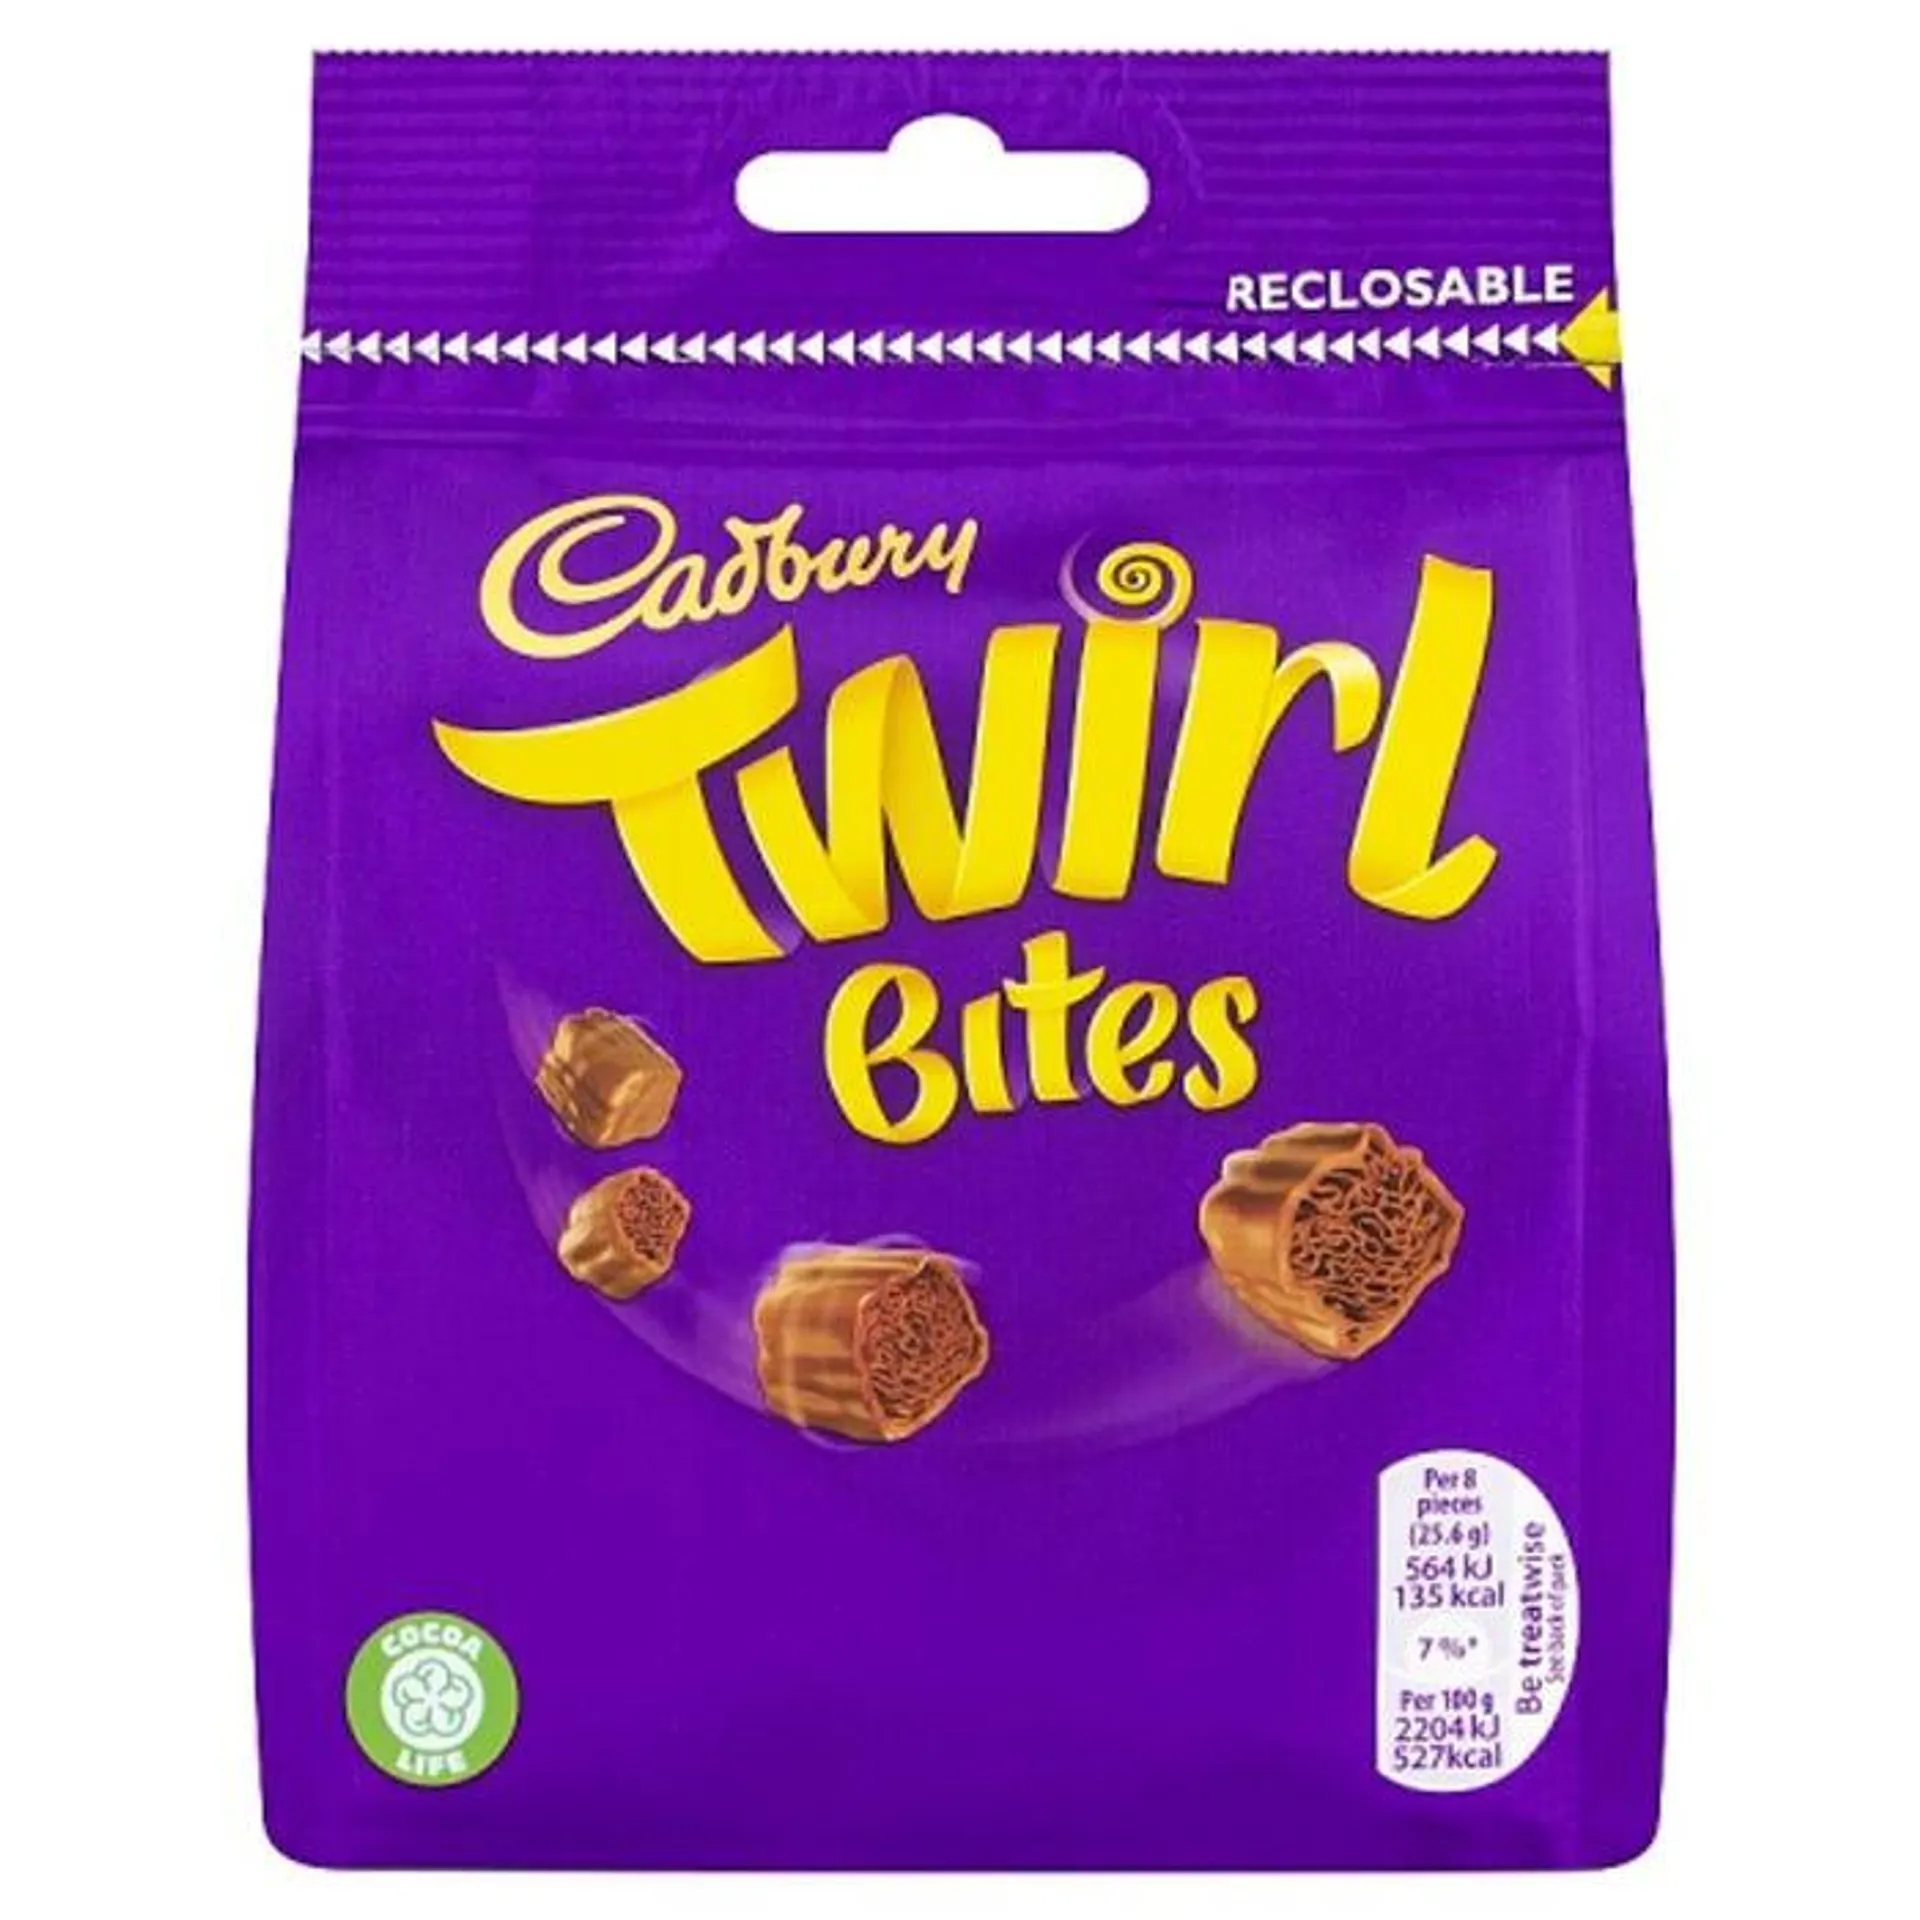 Cadbury Twirl Bites, 95g